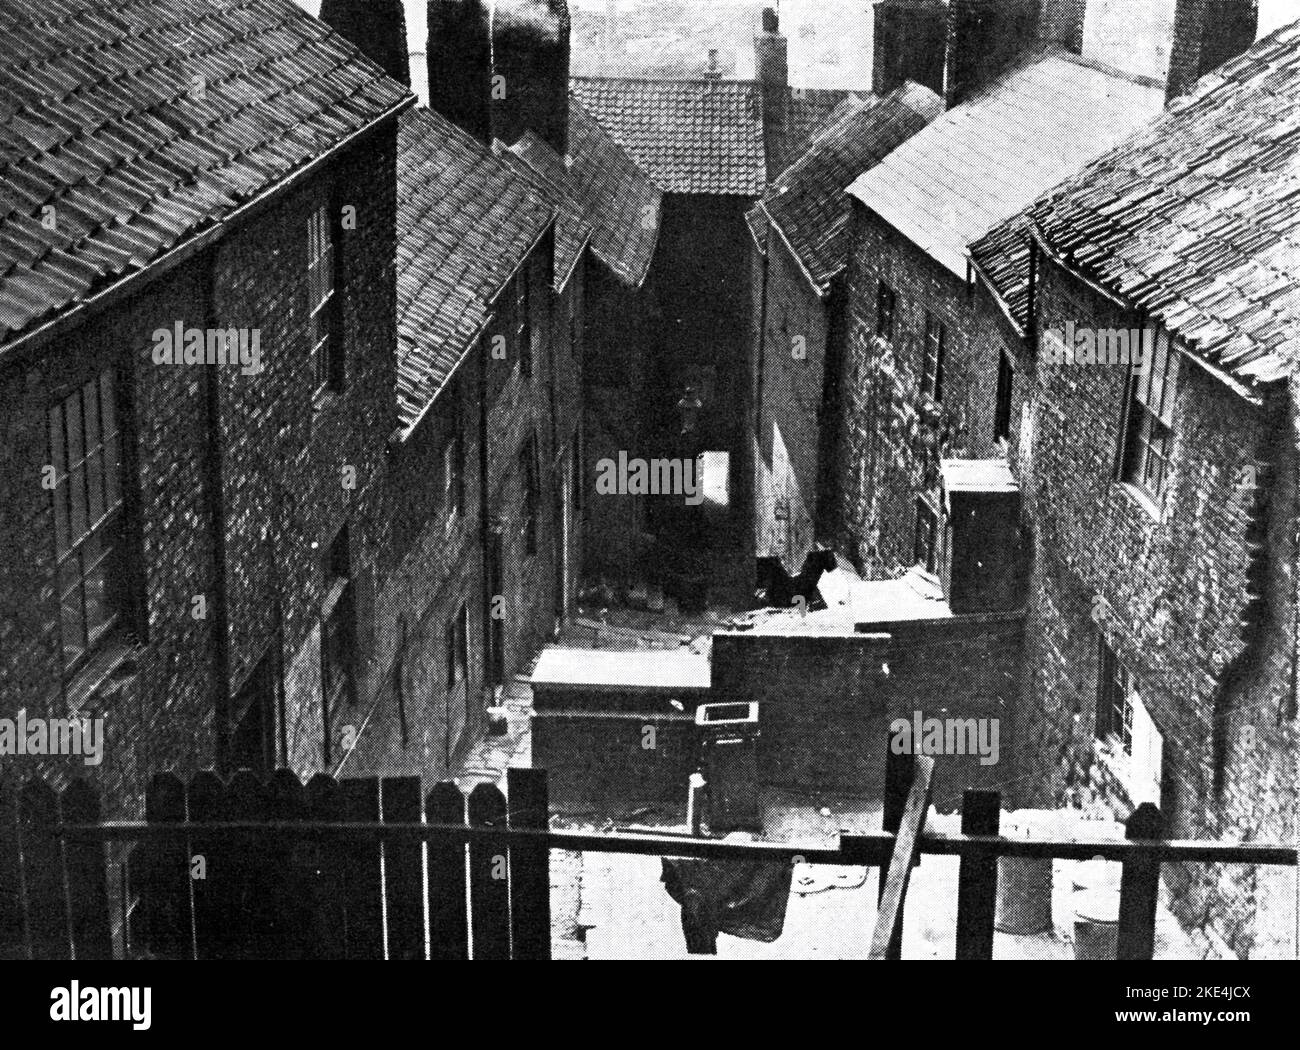 Slum cortile nella città industriale settentrionale, Inghilterra, 1933. La bonifica delle baraccopoli nel Regno Unito è stata utilizzata come strategia di rinnovamento urbano per trasformare le aree più povere. Nelle città settentrionali del paese si svolsero le prime raduno di massa. A partire dagli anni '1930s, con il Housing Act del 1930, i consigli dovevano preparare piani per eliminare le abitazioni degli slum, anche se i progressi si sono arenati con l'inizio della seconda guerra mondiale Foto Stock